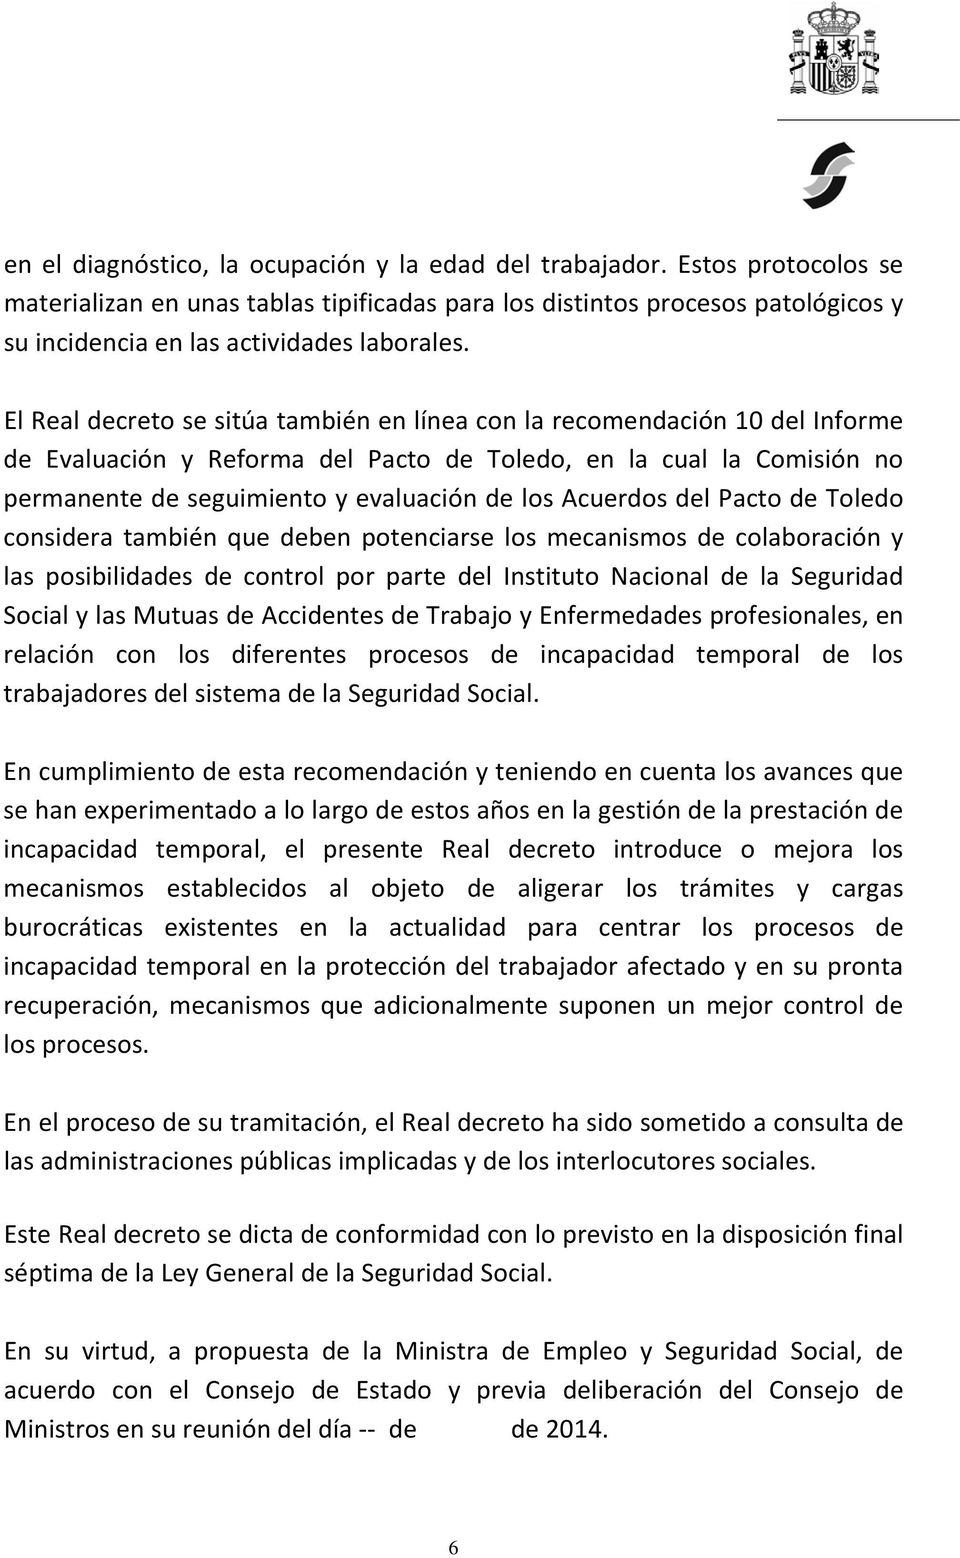 El Real decreto se sitúa también en línea con la recomendación 10 del Informe de Evaluación y Reforma del Pacto de Toledo, en la cual la Comisión no permanente de seguimiento y evaluación de los